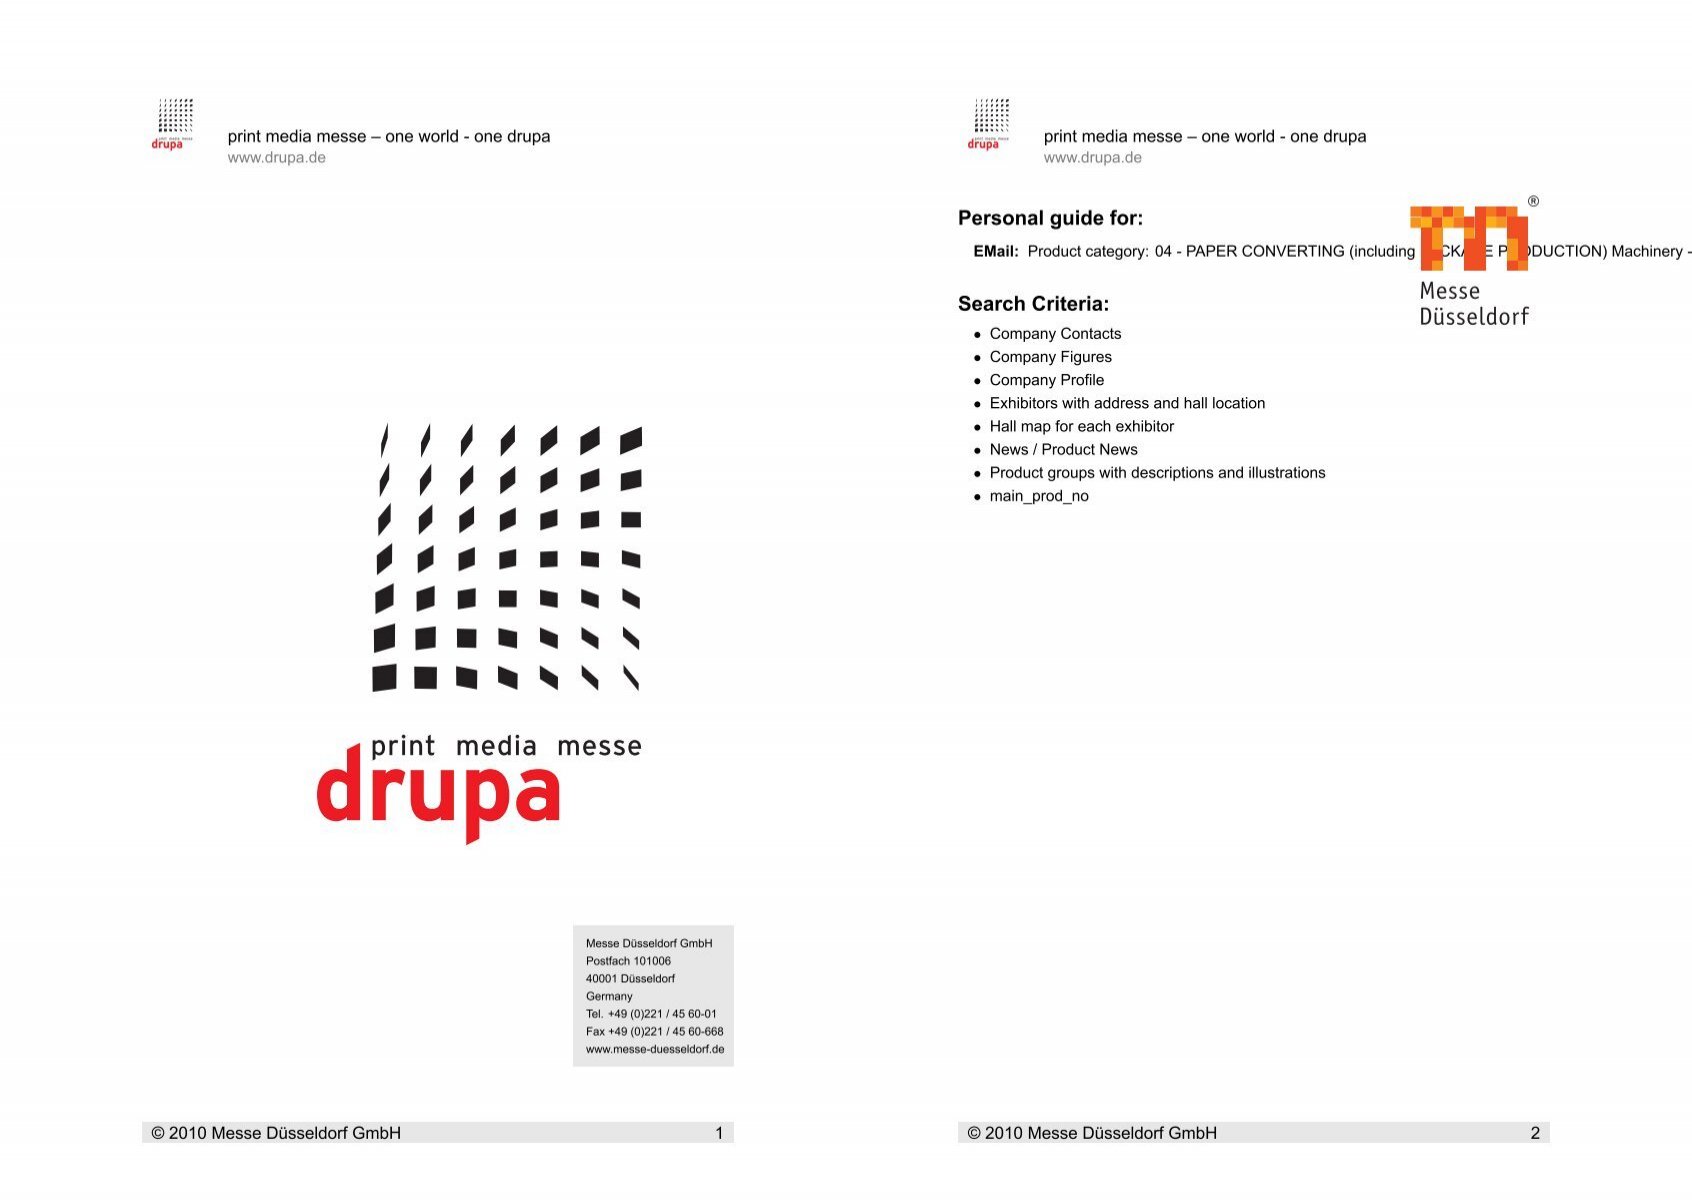 Personal guide for: Search - Drupa Criteria